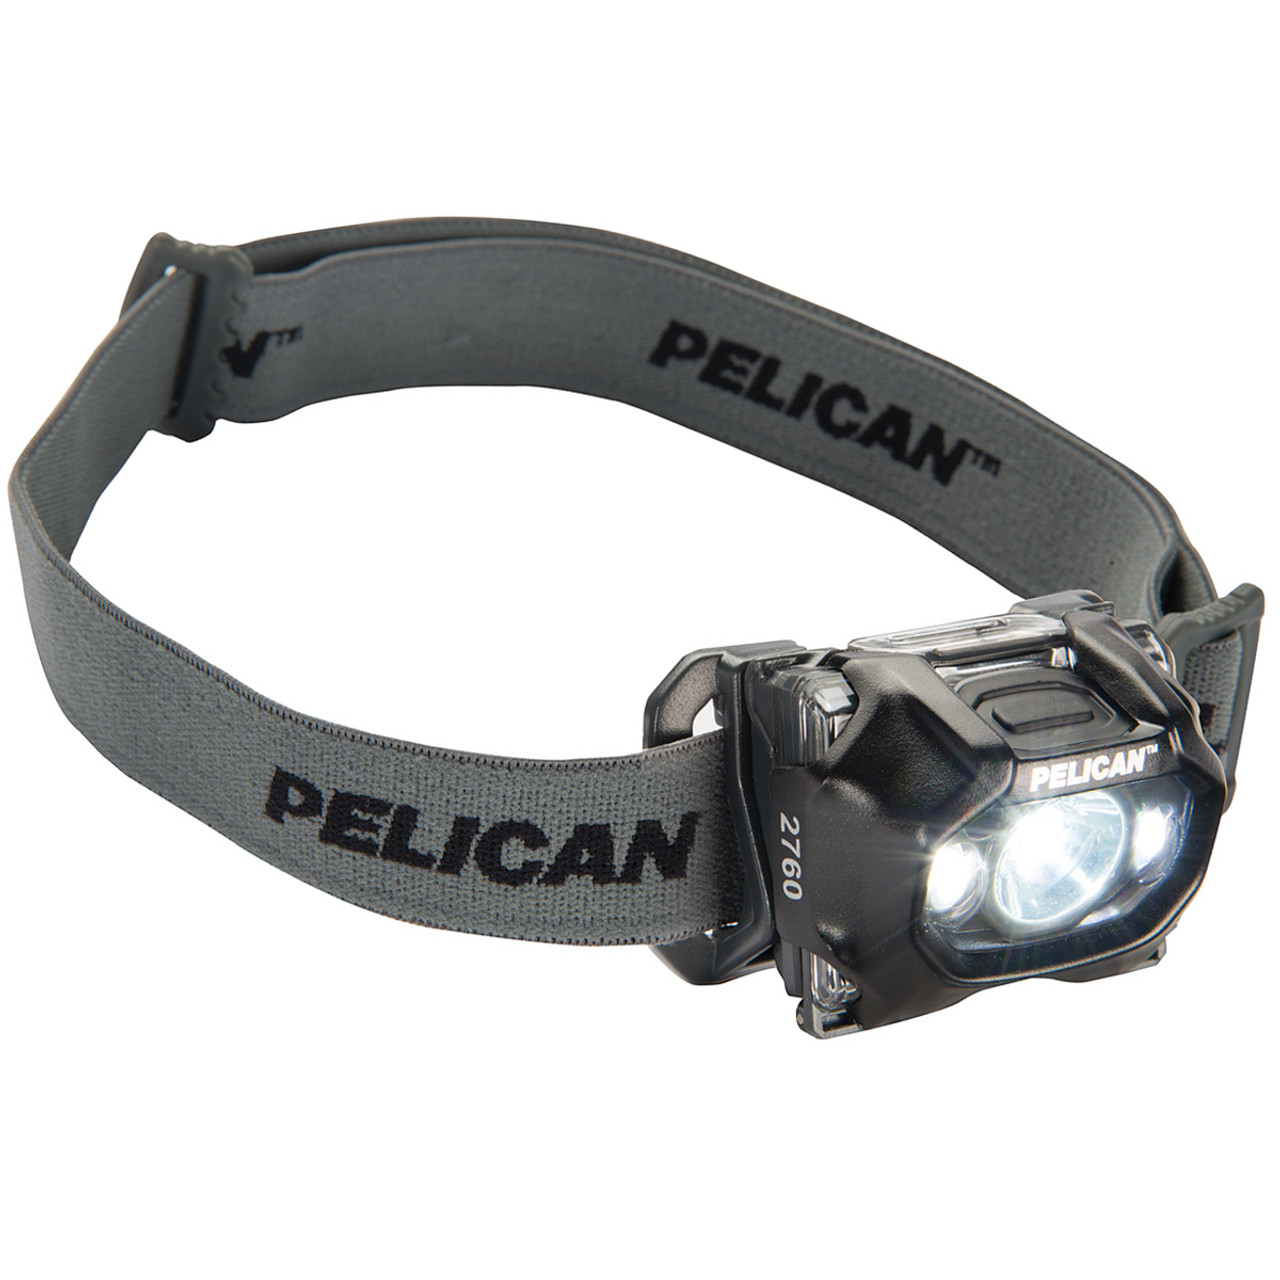 Shop Pelican 2760 Headlamp at